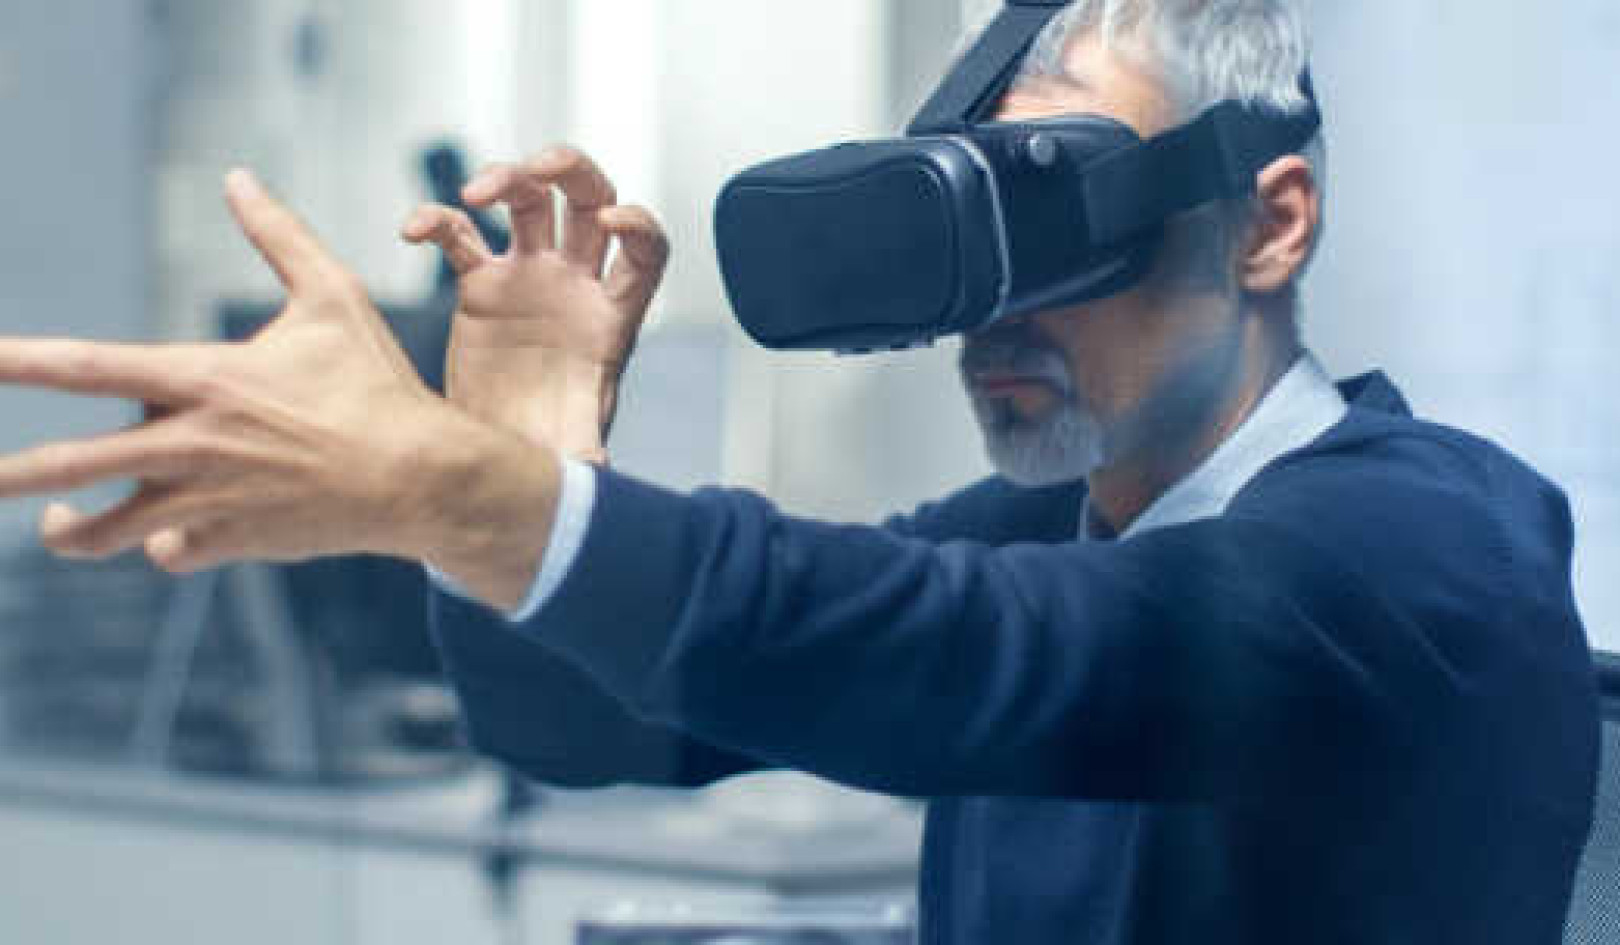 Maaari bang Pabilisin ng Virtual Reality ang Pagbawi ng Stroke?